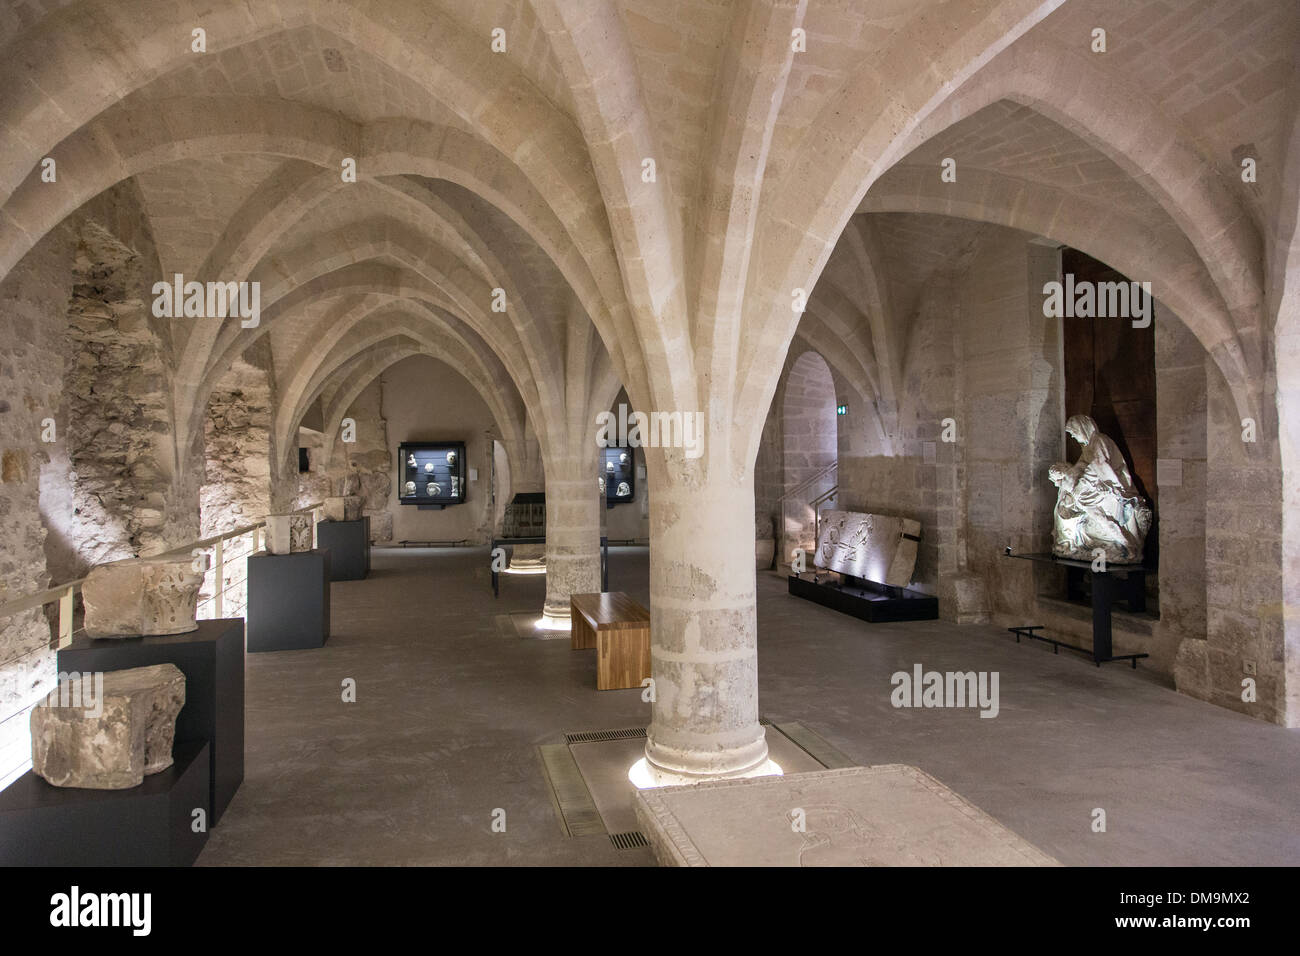 14ème siècle cave voûtée DANS LE MUSÉE DE LA VILLE D'ART ET D'ARCHÉOLOGIE DANS L'ANCIEN PALAIS DE L'évêque, Senlis, OISE (60), FRANCE Banque D'Images